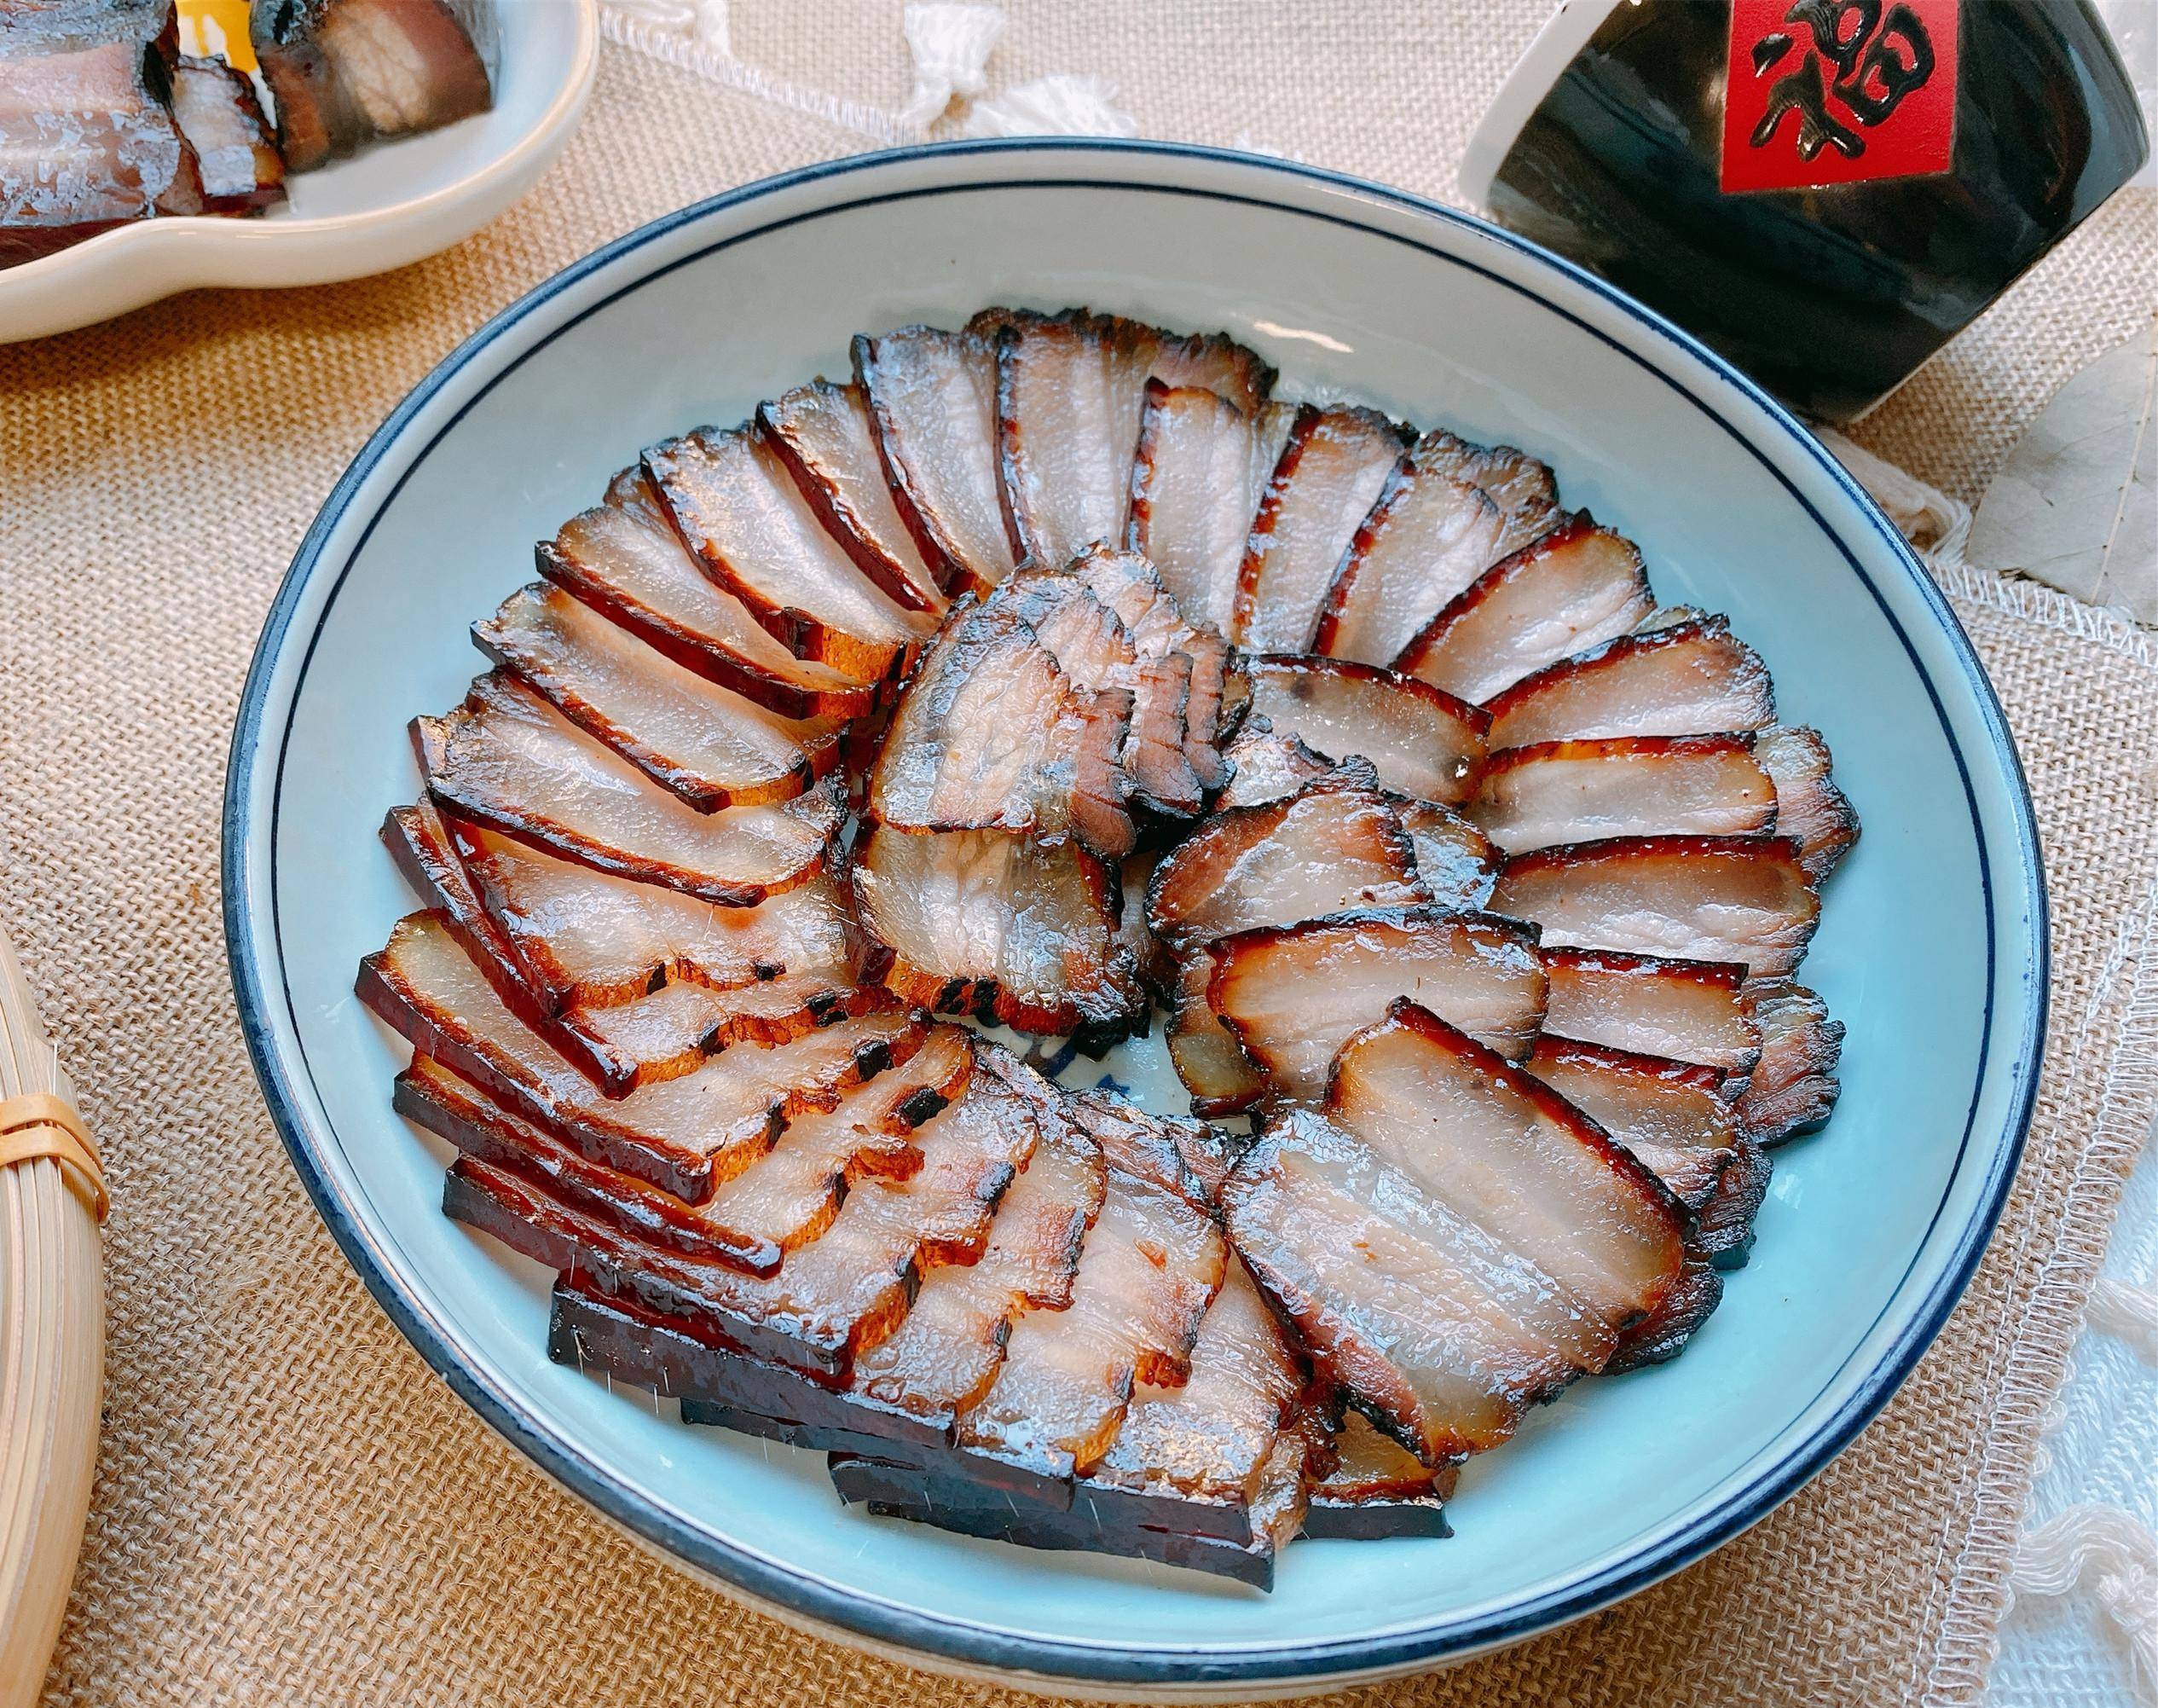 潮汕酱油煮猪肉图片